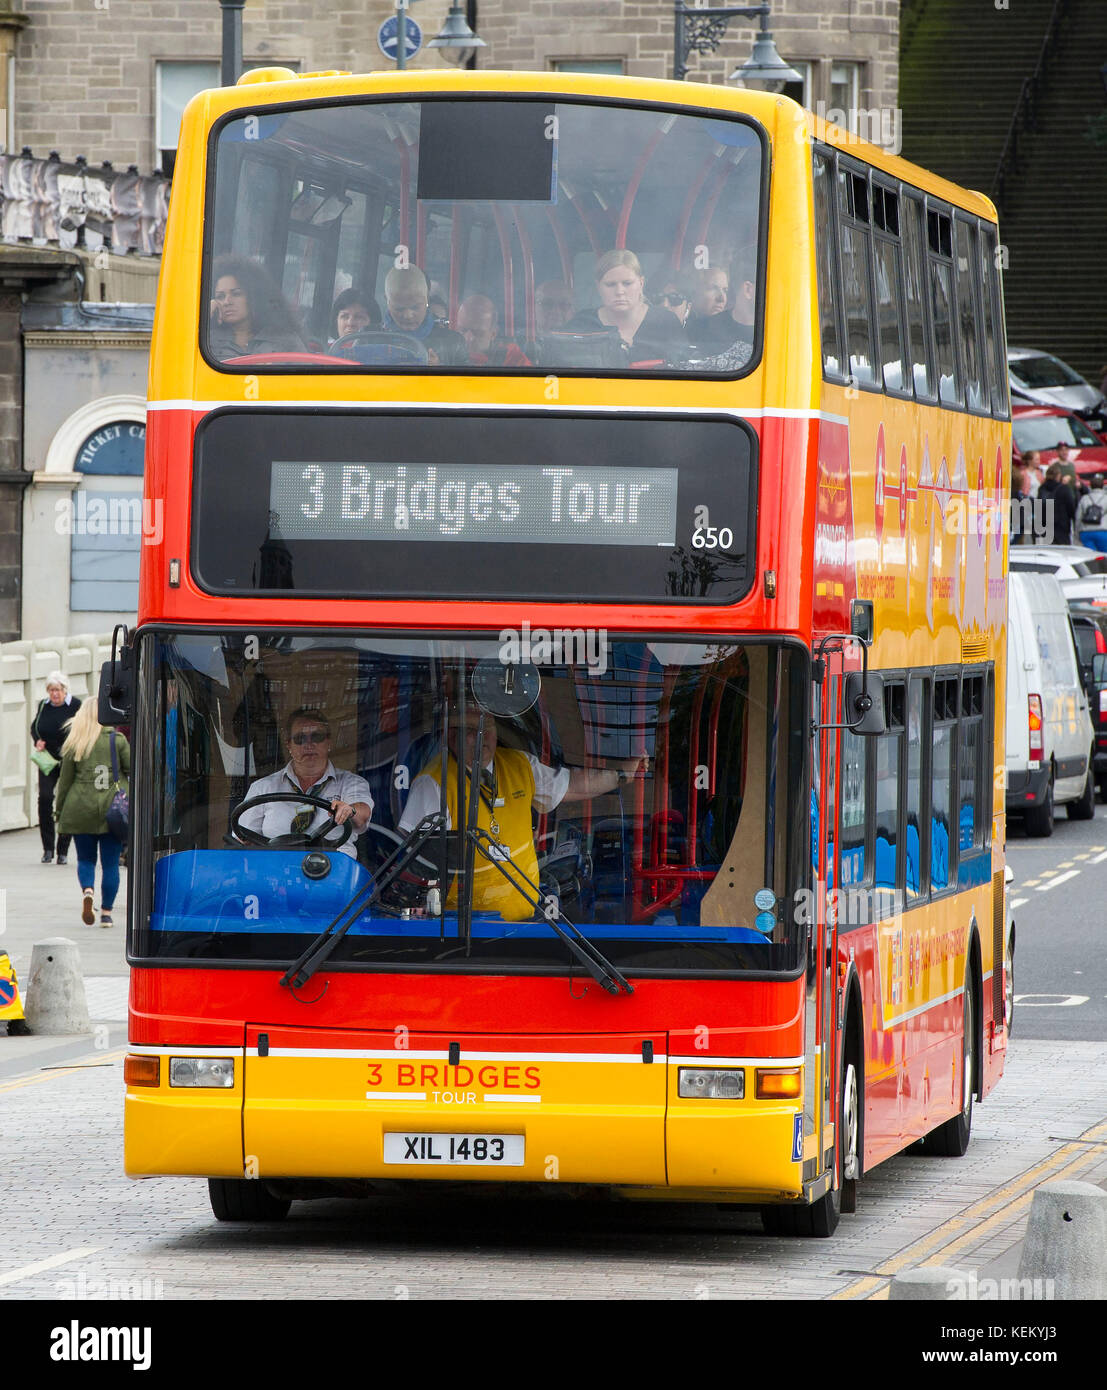 Drei Brücken Double Decker Bus kommt an der Waverley Bridge, Edinburgh. Die neue touristische Route bringt Passagiere die Forth Bridges zu sehen. Stockfoto